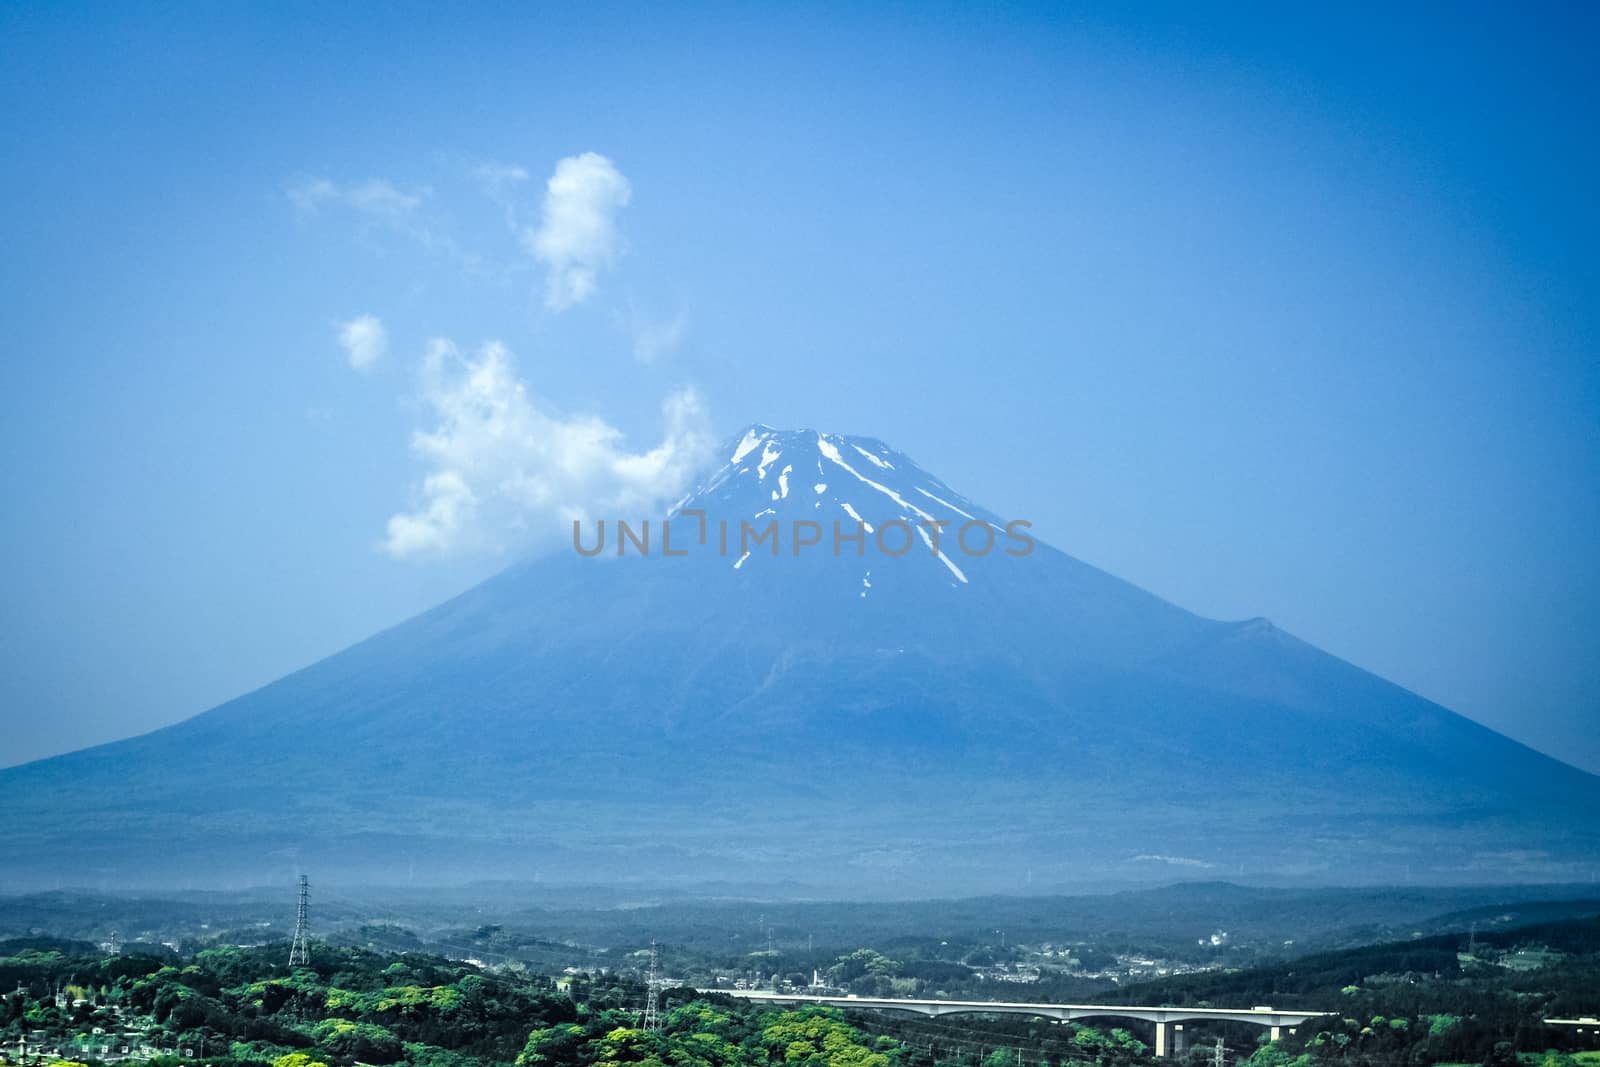 Mount Fuji, Japan by daboost